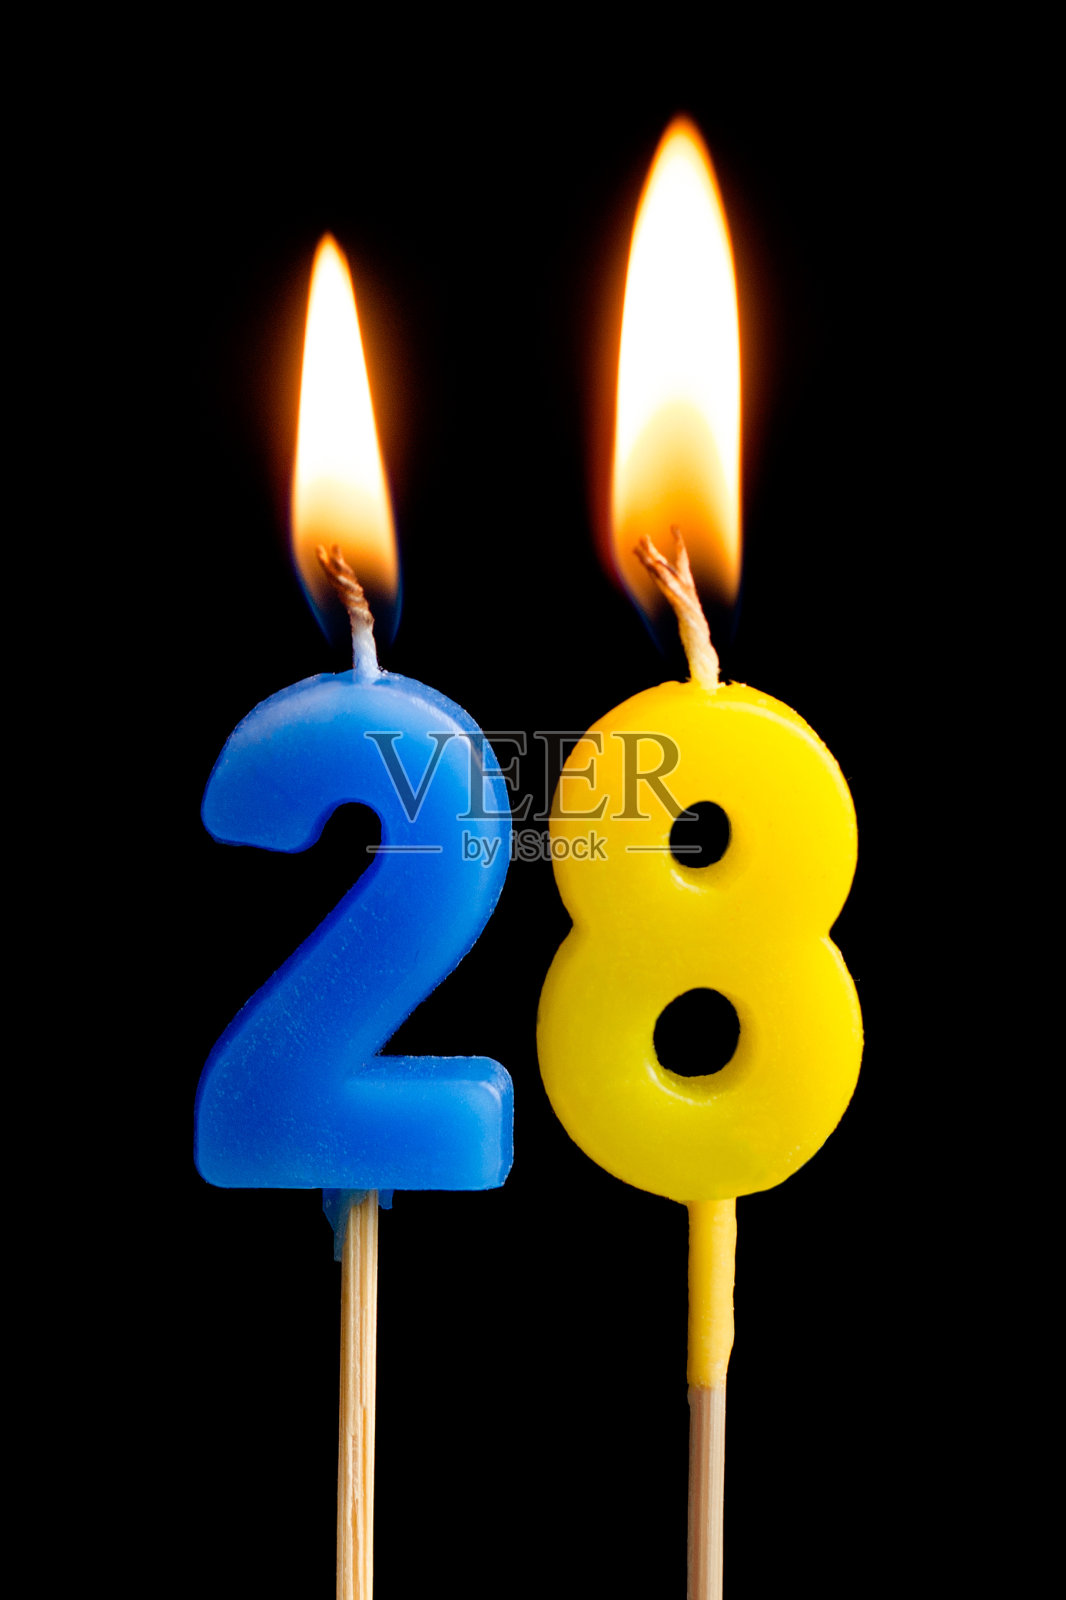 燃烧蜡烛的形式28 28(数字，日期)蛋糕孤立在黑色的背景。庆祝生日、周年纪念、重要日期、节日、餐桌摆设的概念照片摄影图片